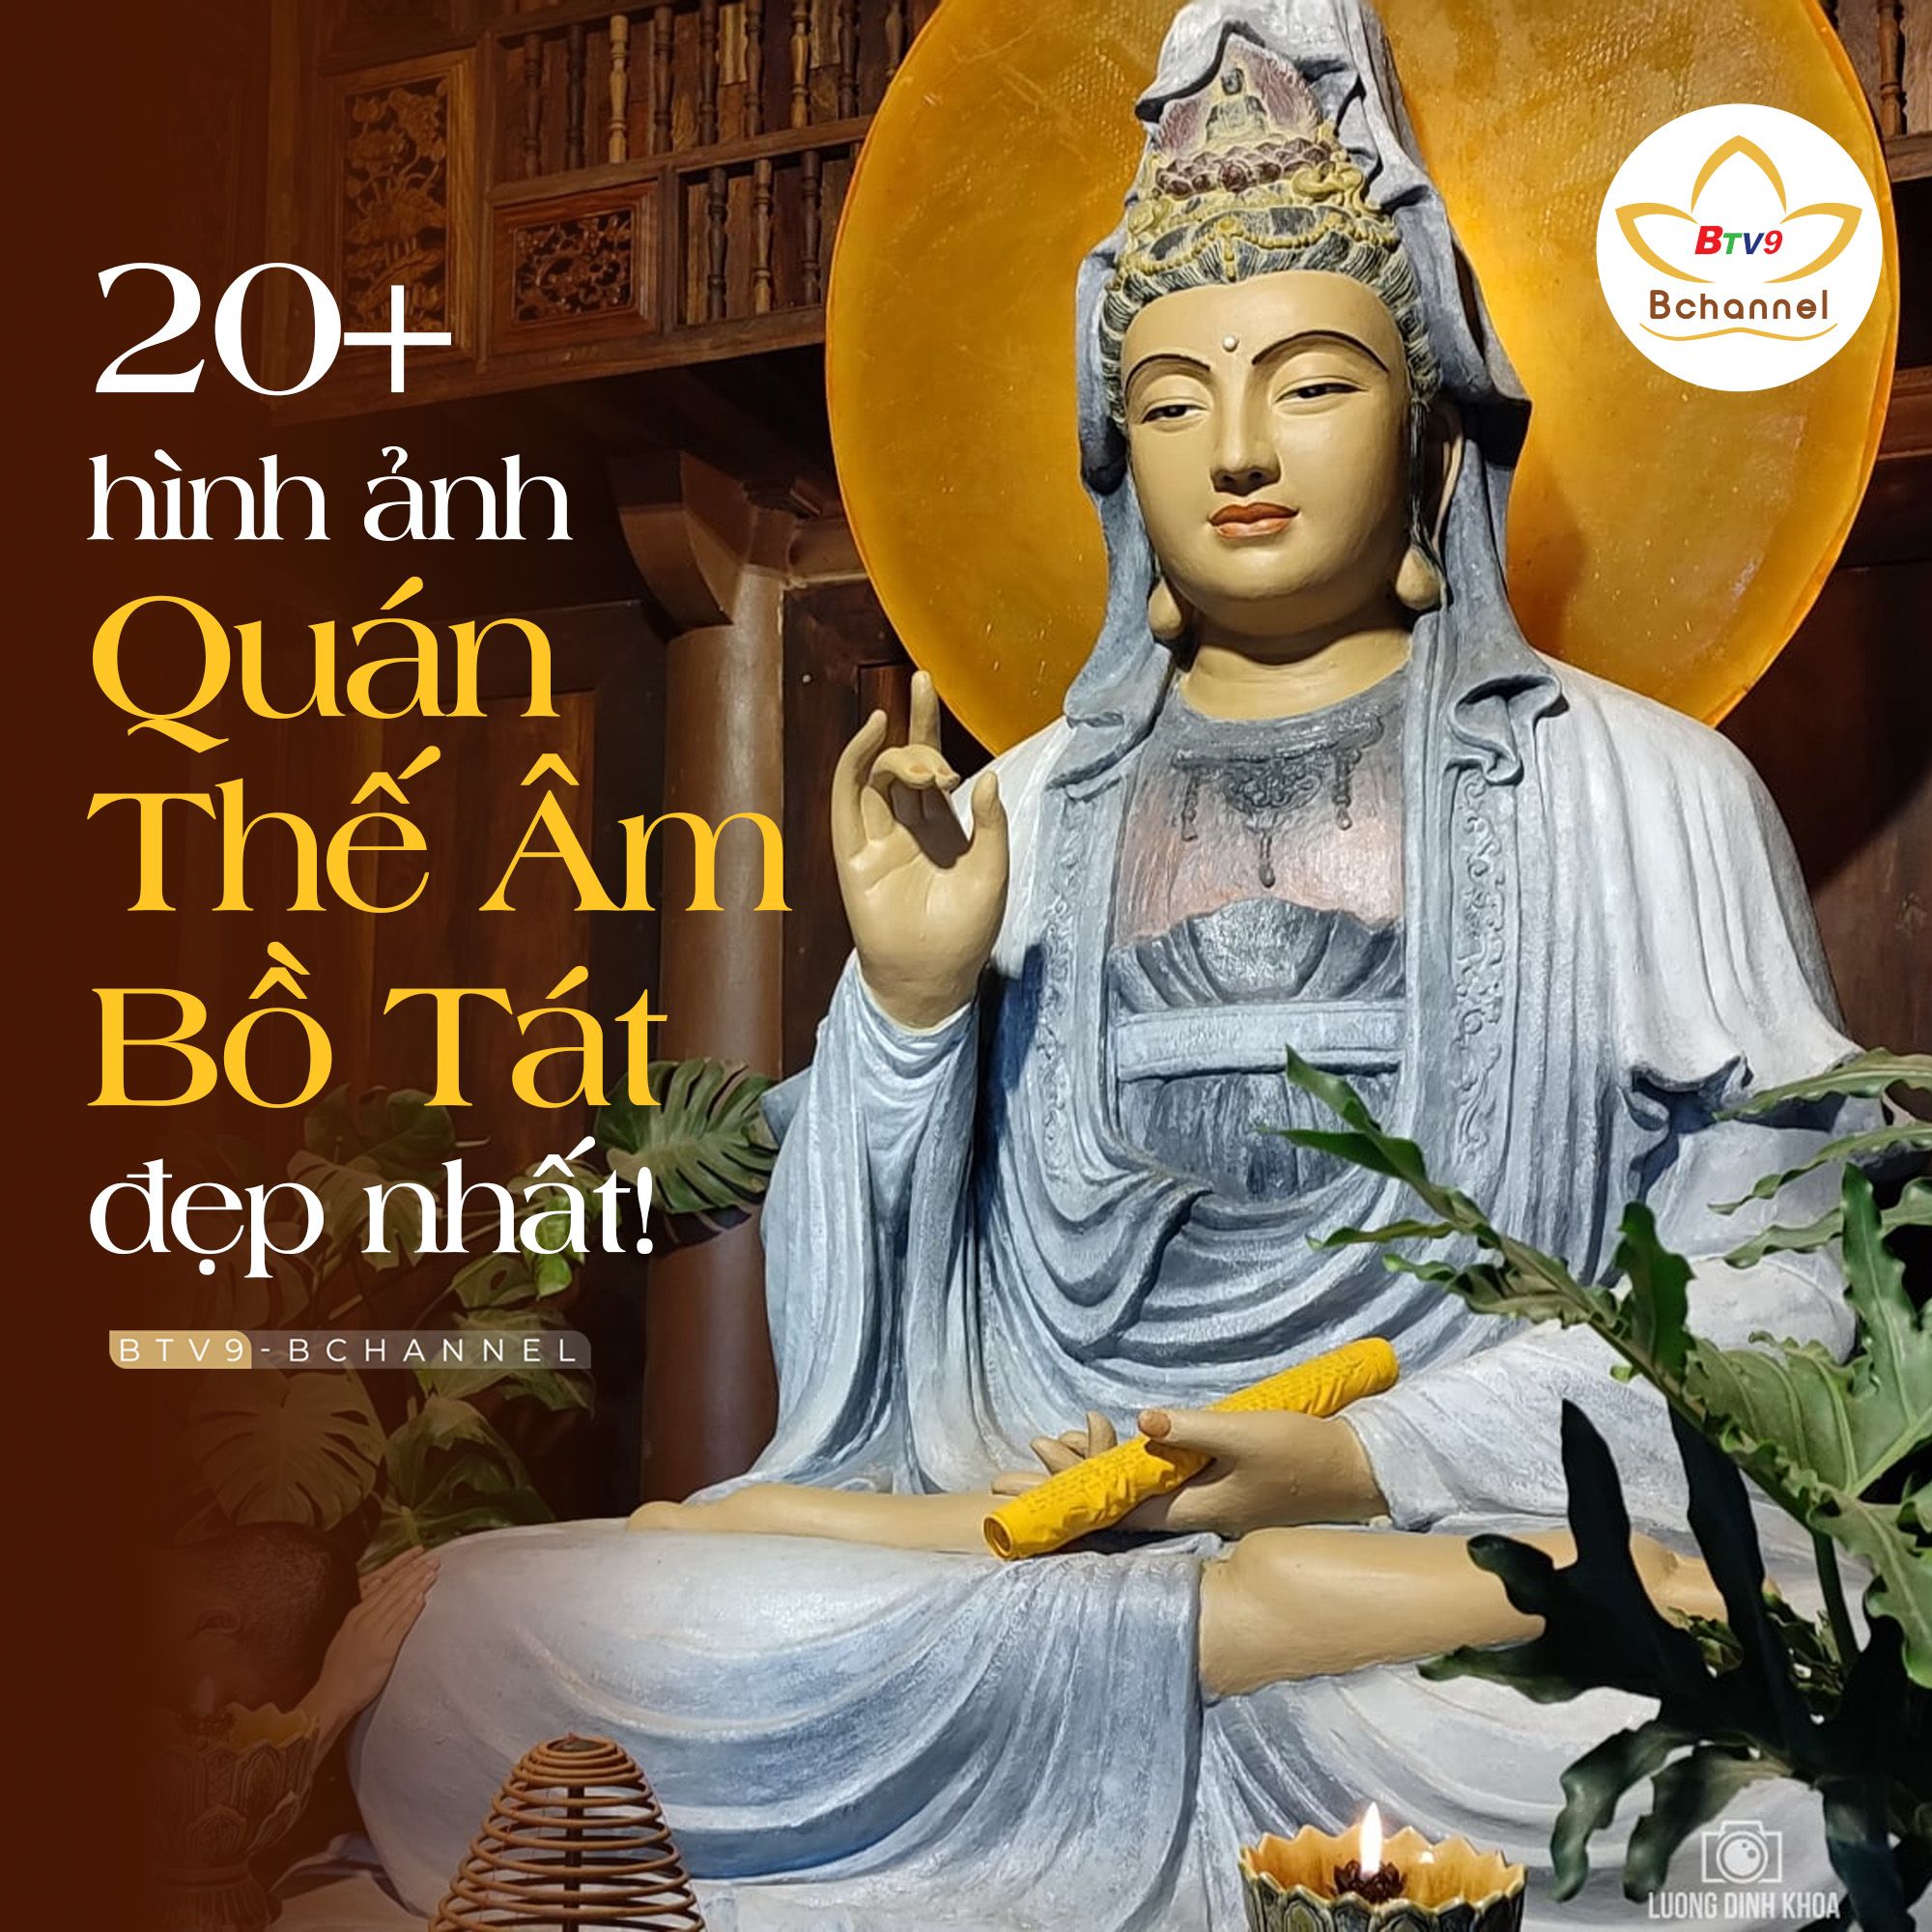 Tranh đá Phật Quan Âm Bồ Tát (tranh đá tự đính) | Shopee Việt Nam